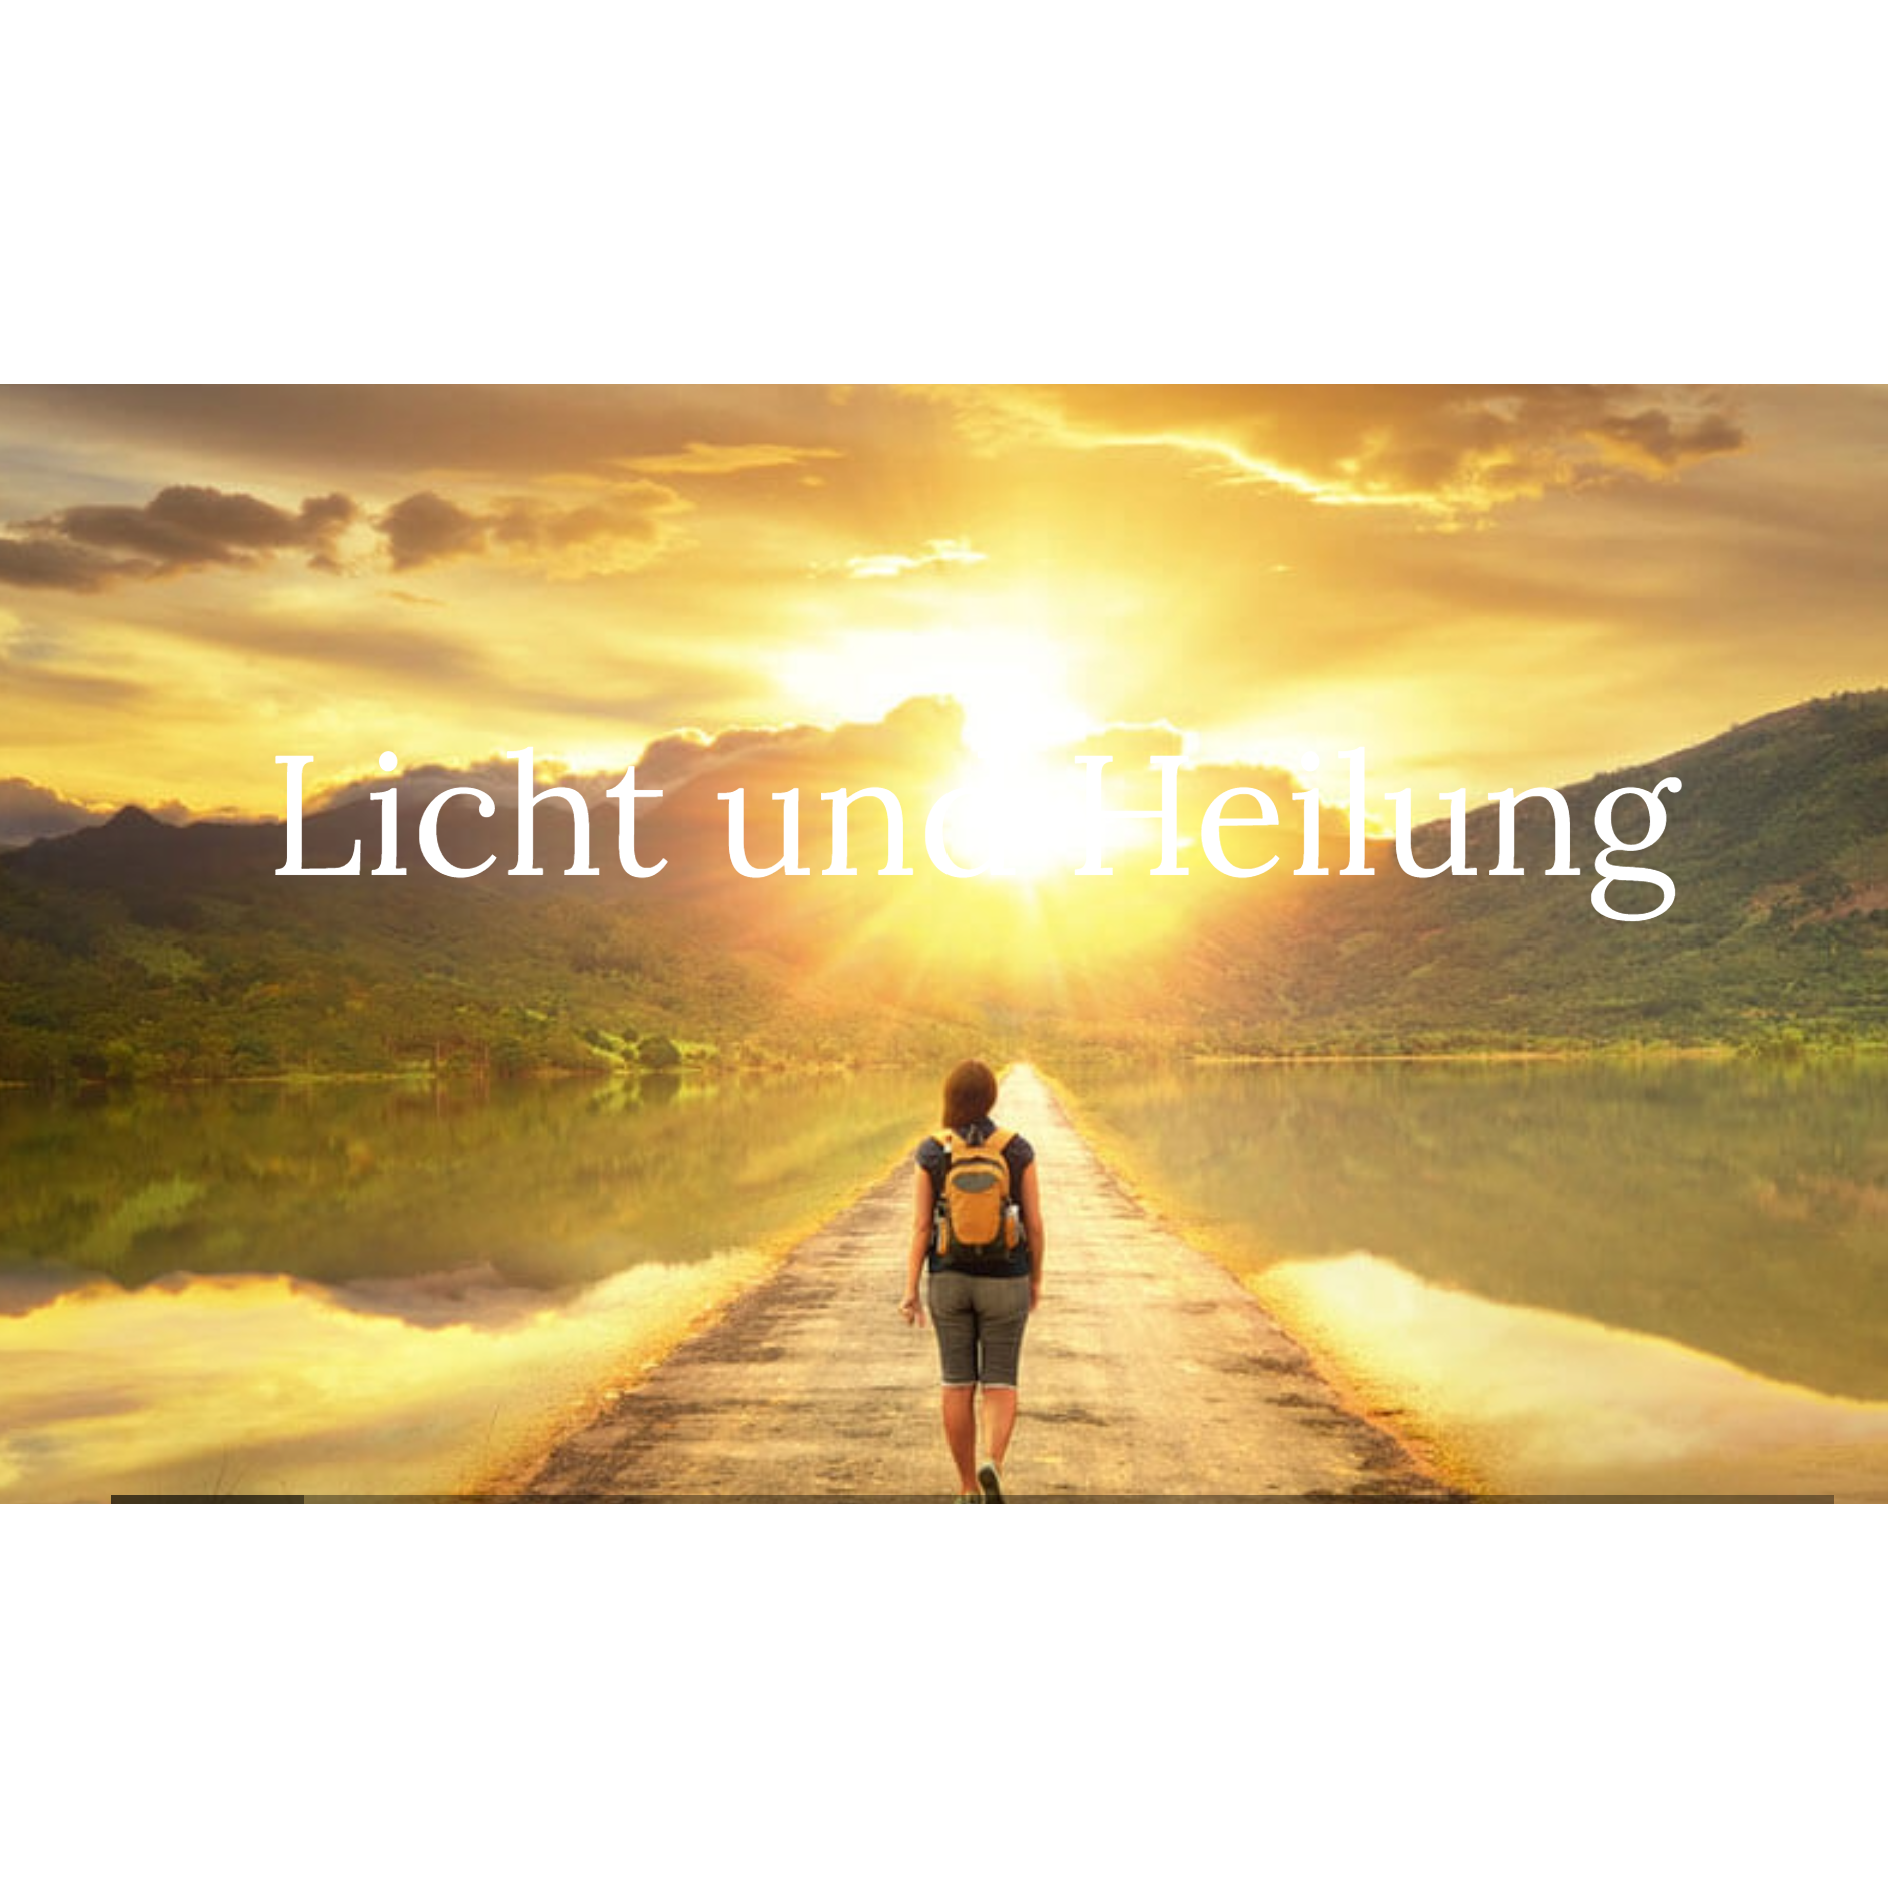 Licht und Heilung Logo